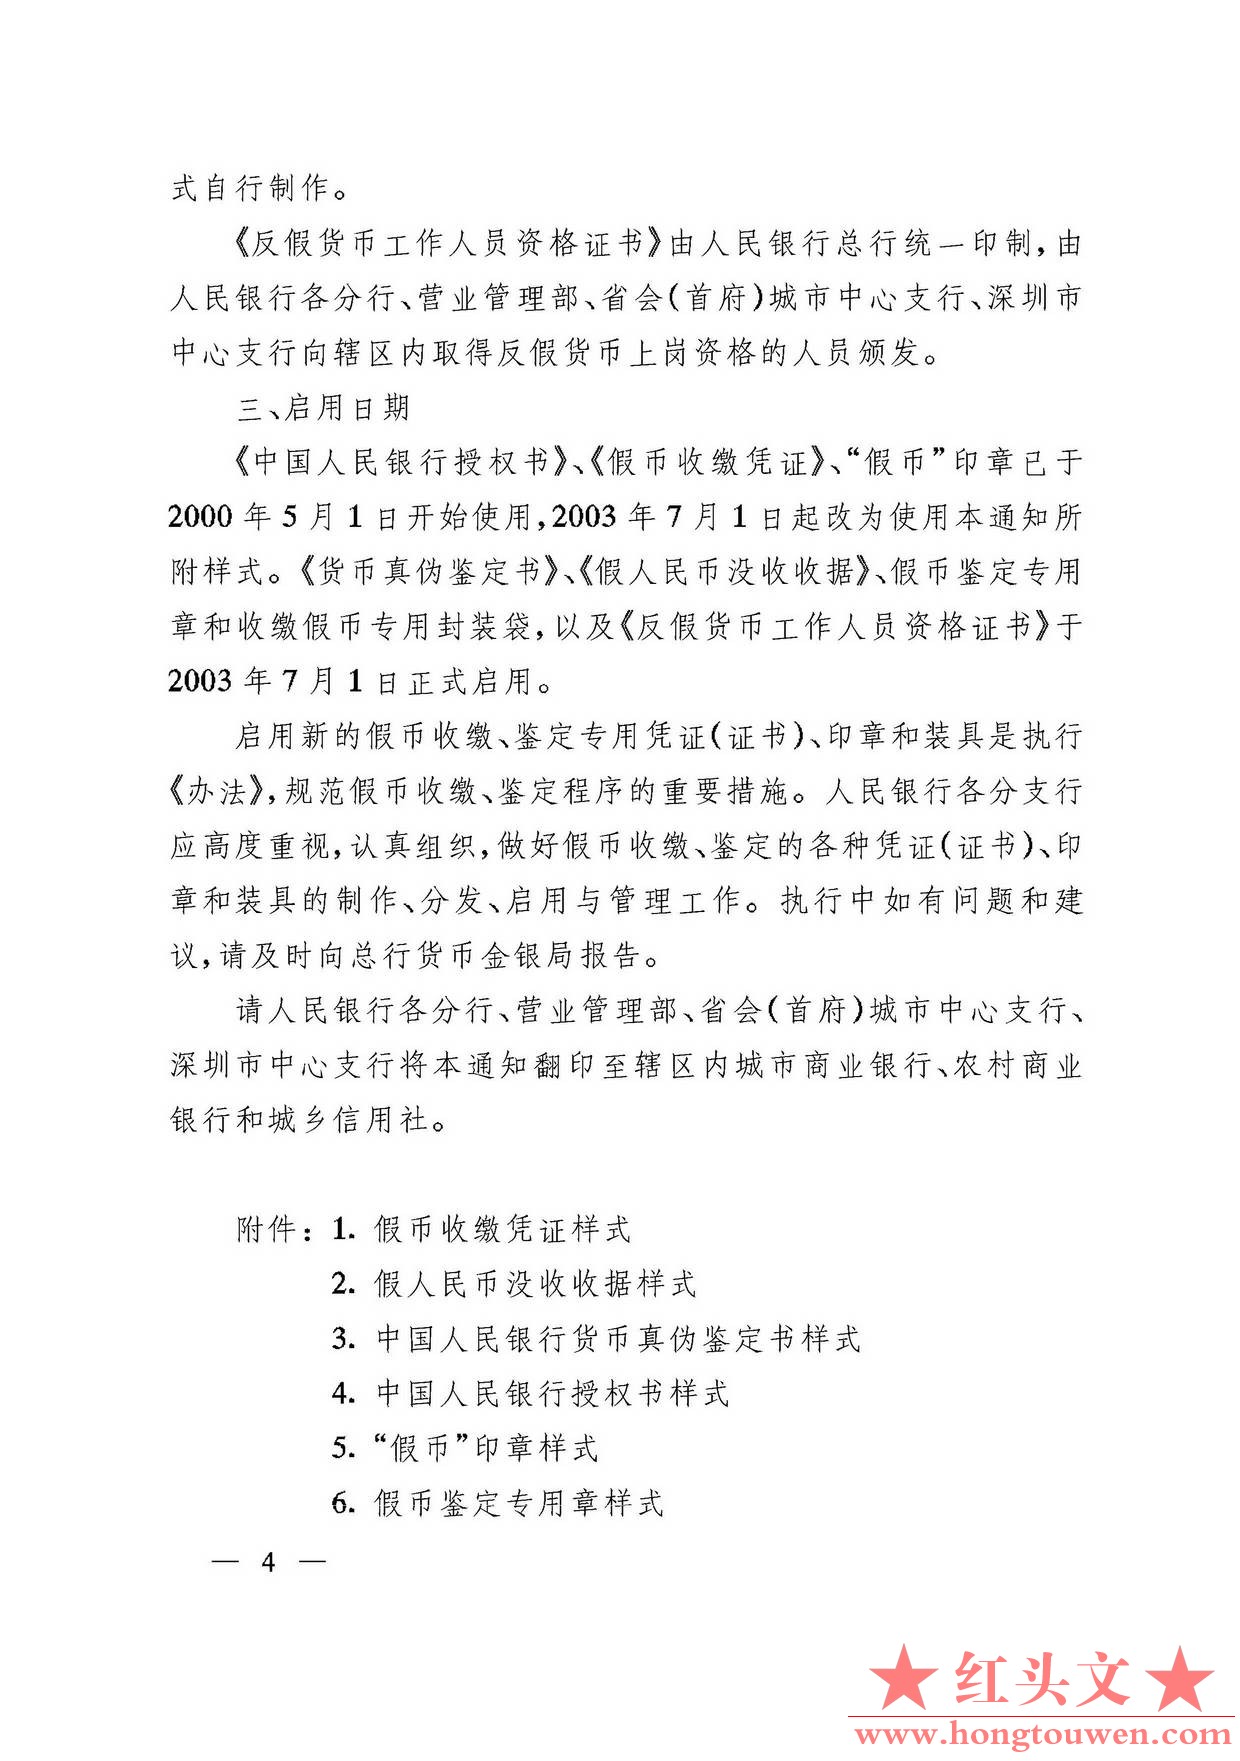 银发[2003]104号-中国人民银行关于印发收缴、鉴定假币专用凭证印章样式及使用说明的通.jpg